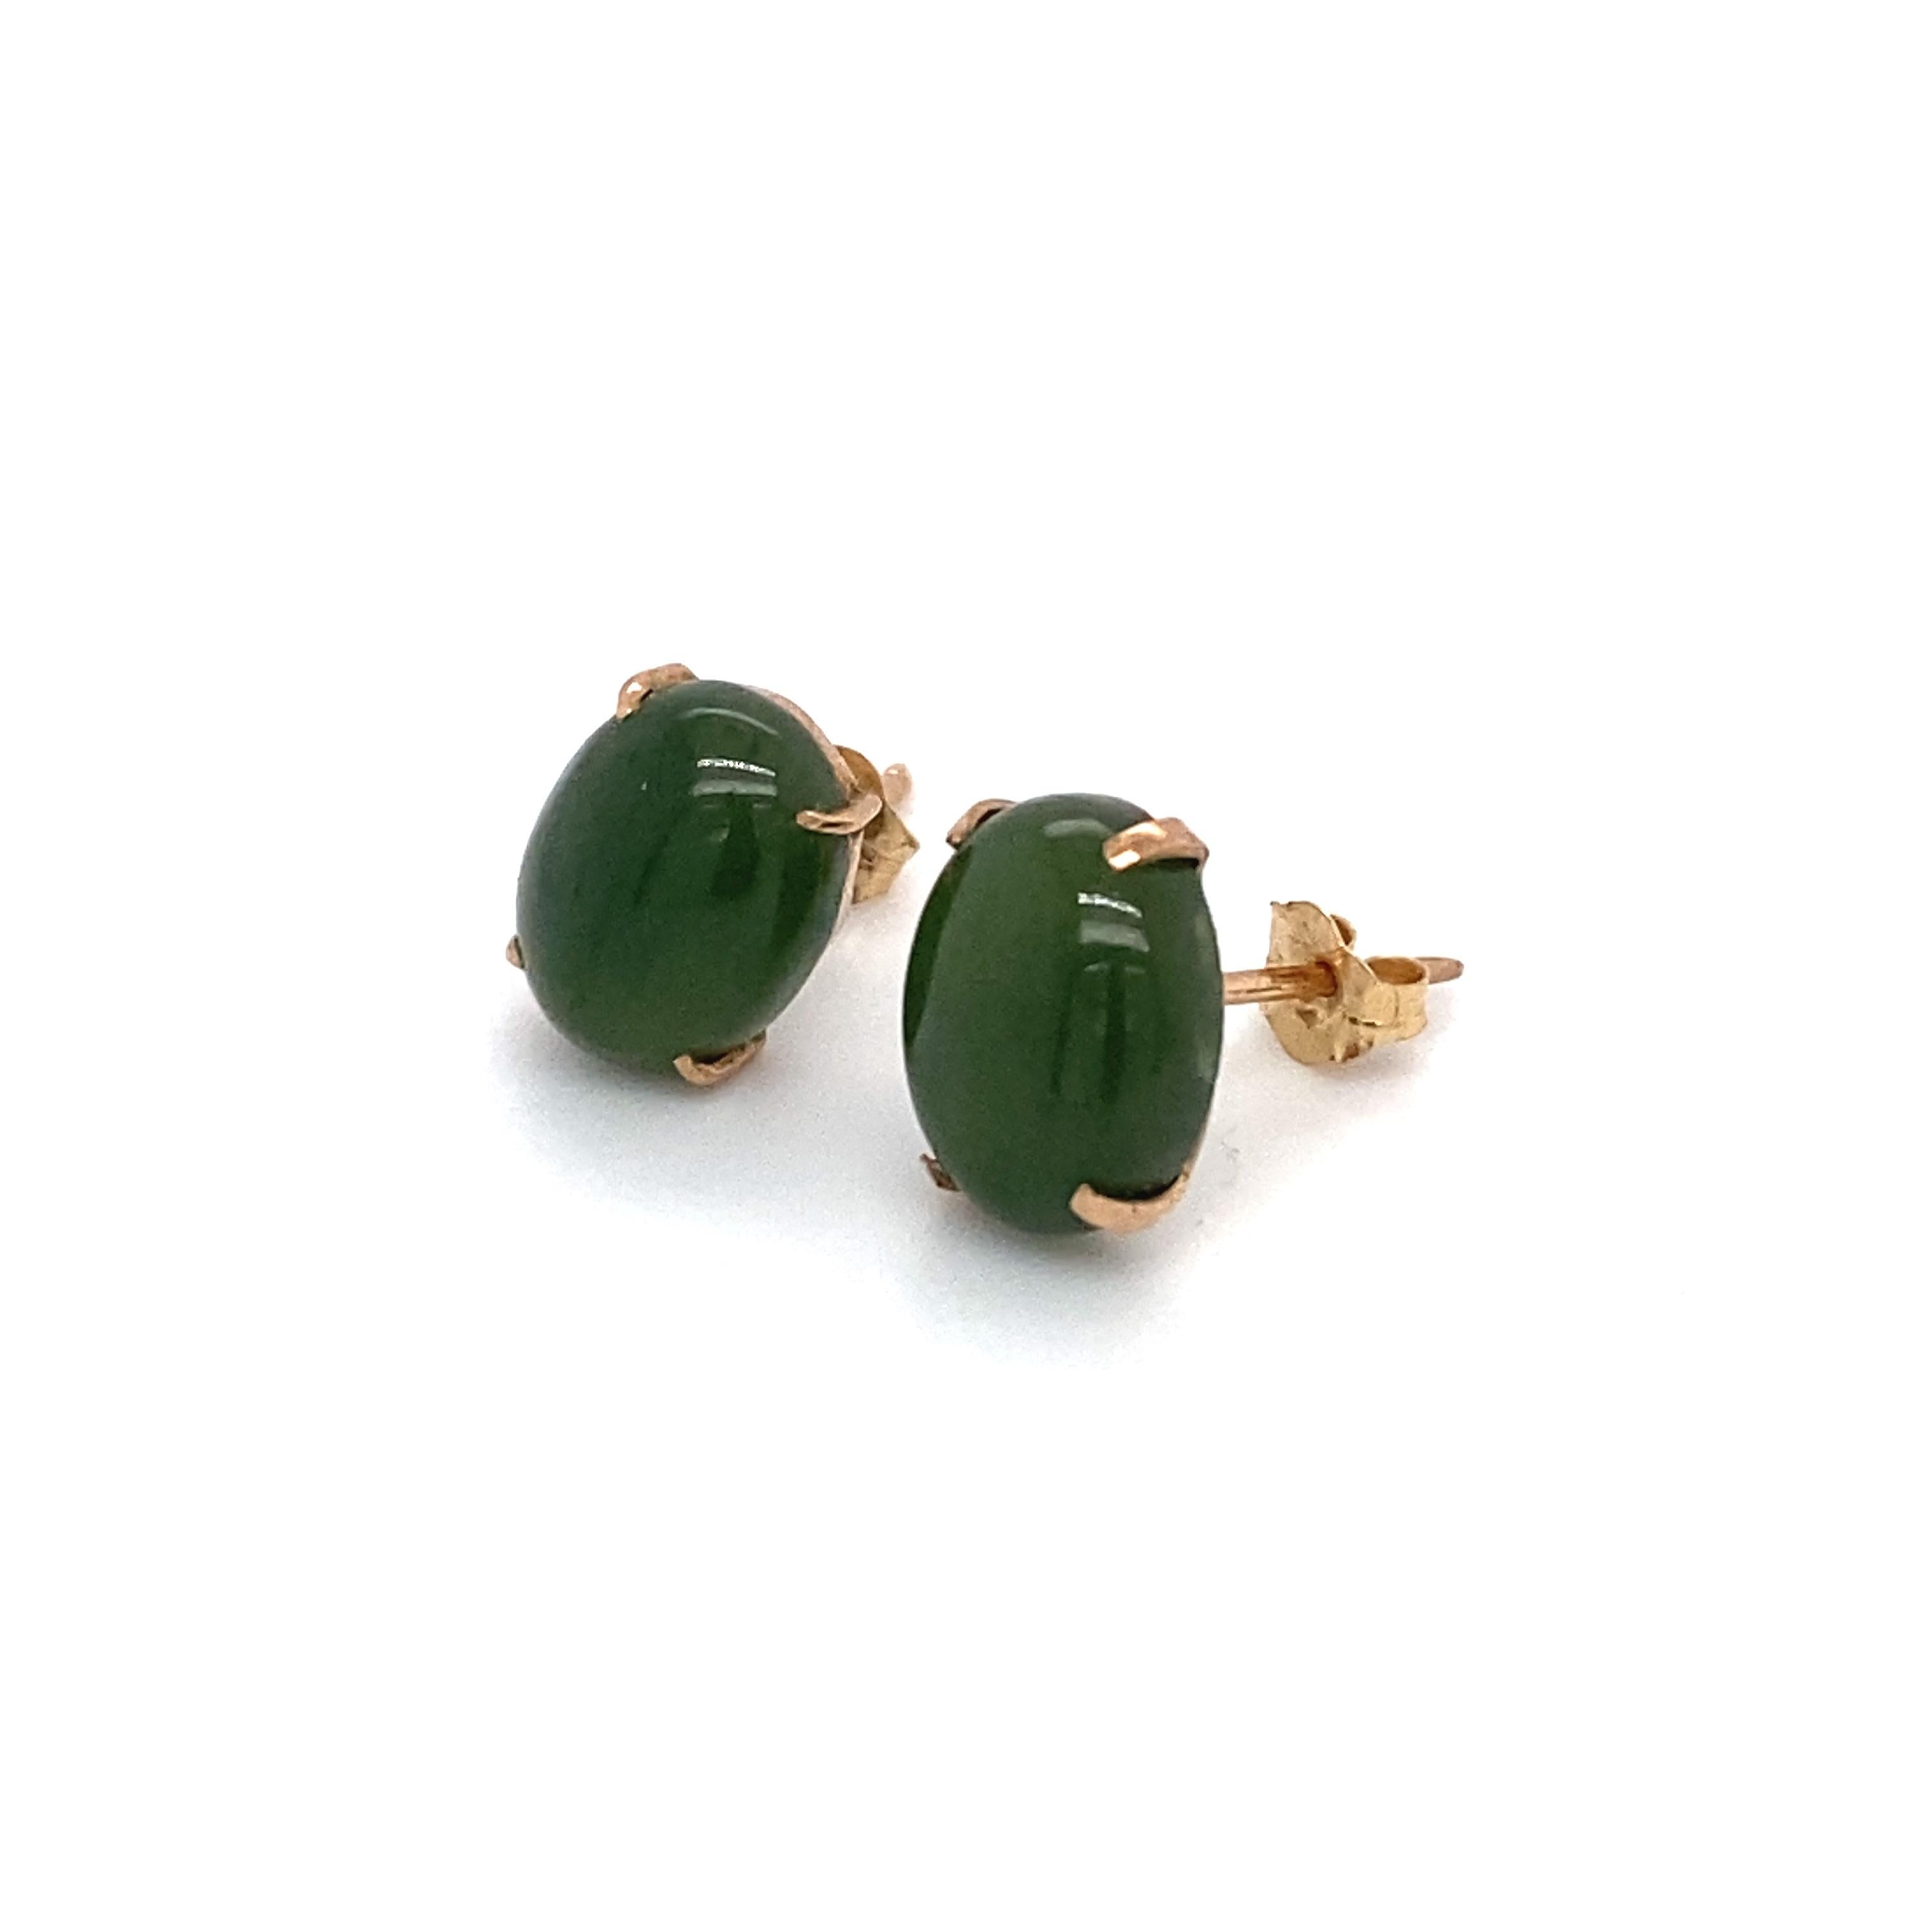 Oval Cut Oval Jade Stud Earrings in 14 Karat Rose Gold For Sale